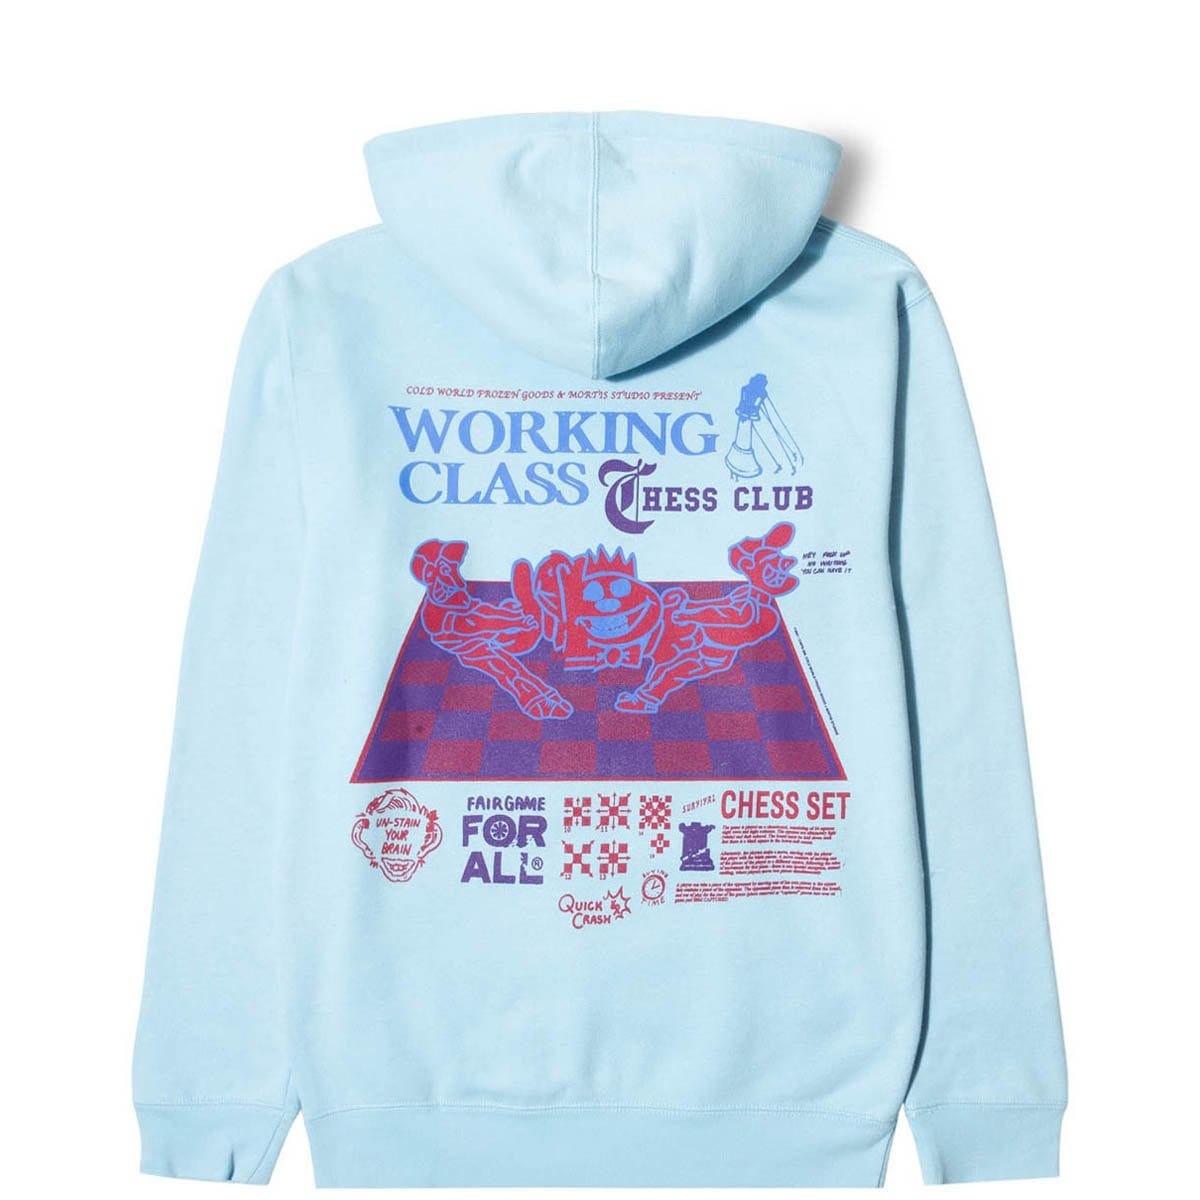 Cold World Frozen Goods Hoodies & Sweatshirts WORKING CLASS HOODIE